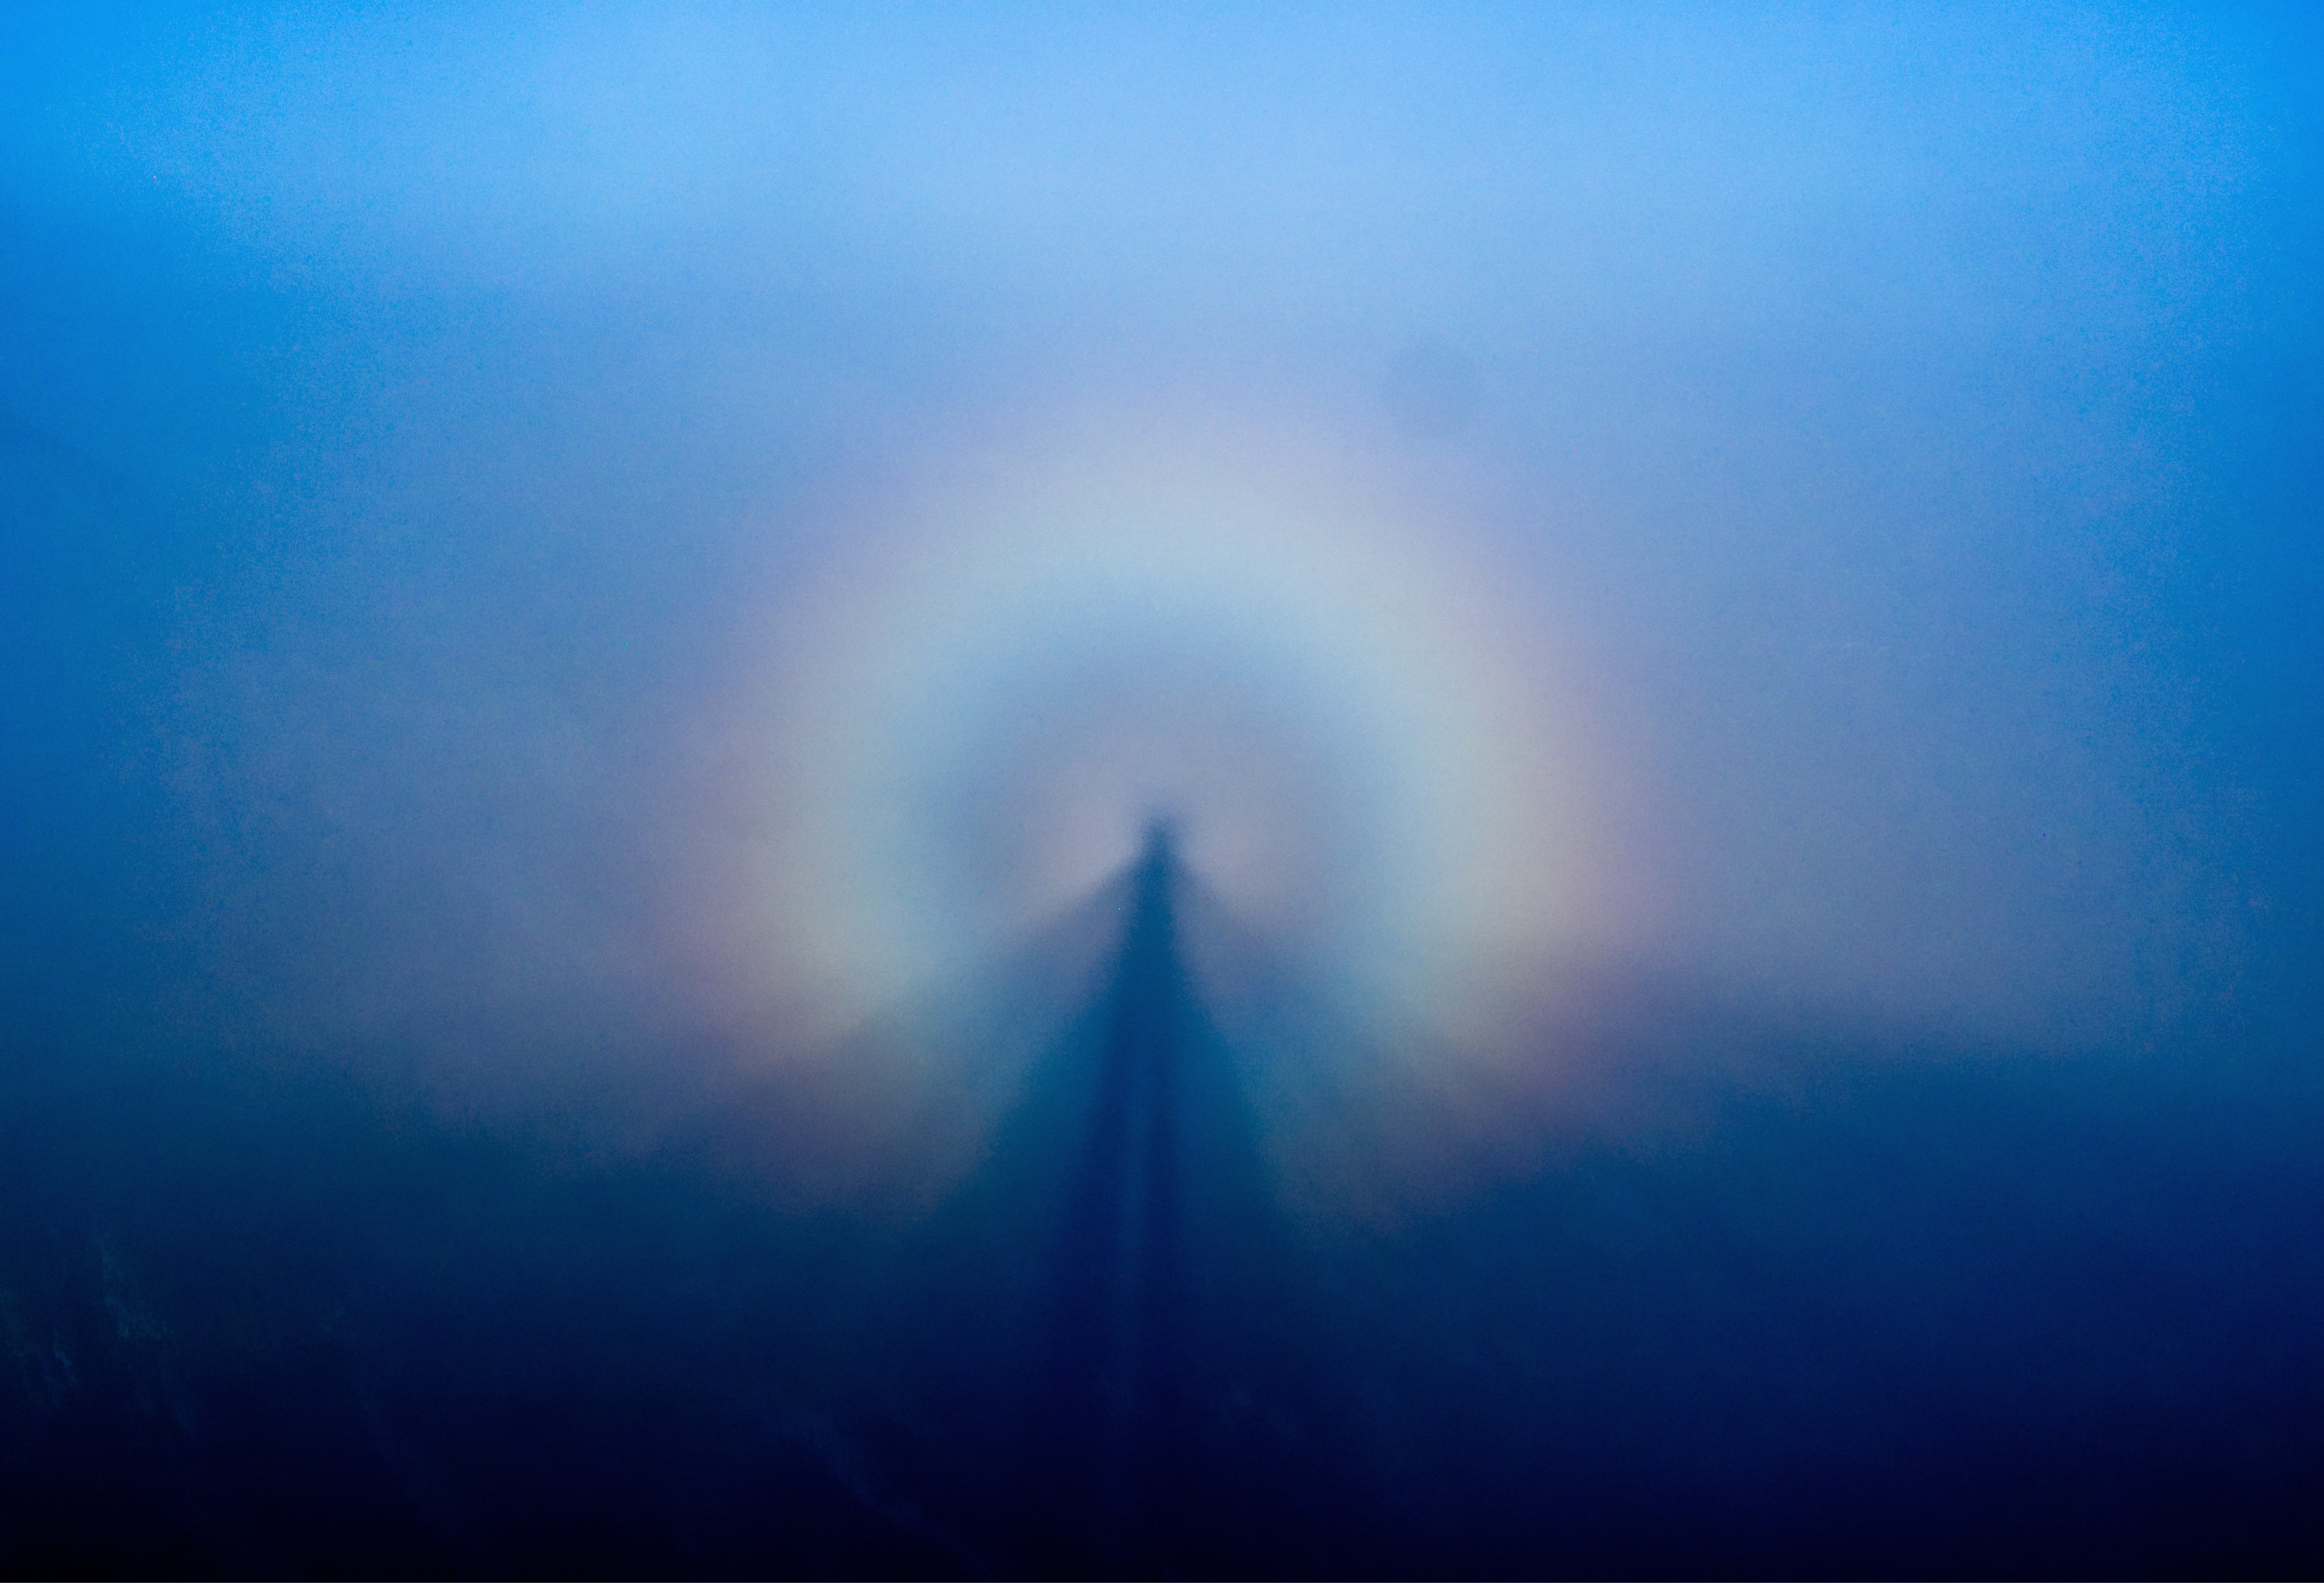 Le "spectre de Brocken", l'incroyable illusion d'optique qui a donné naissance à un ange